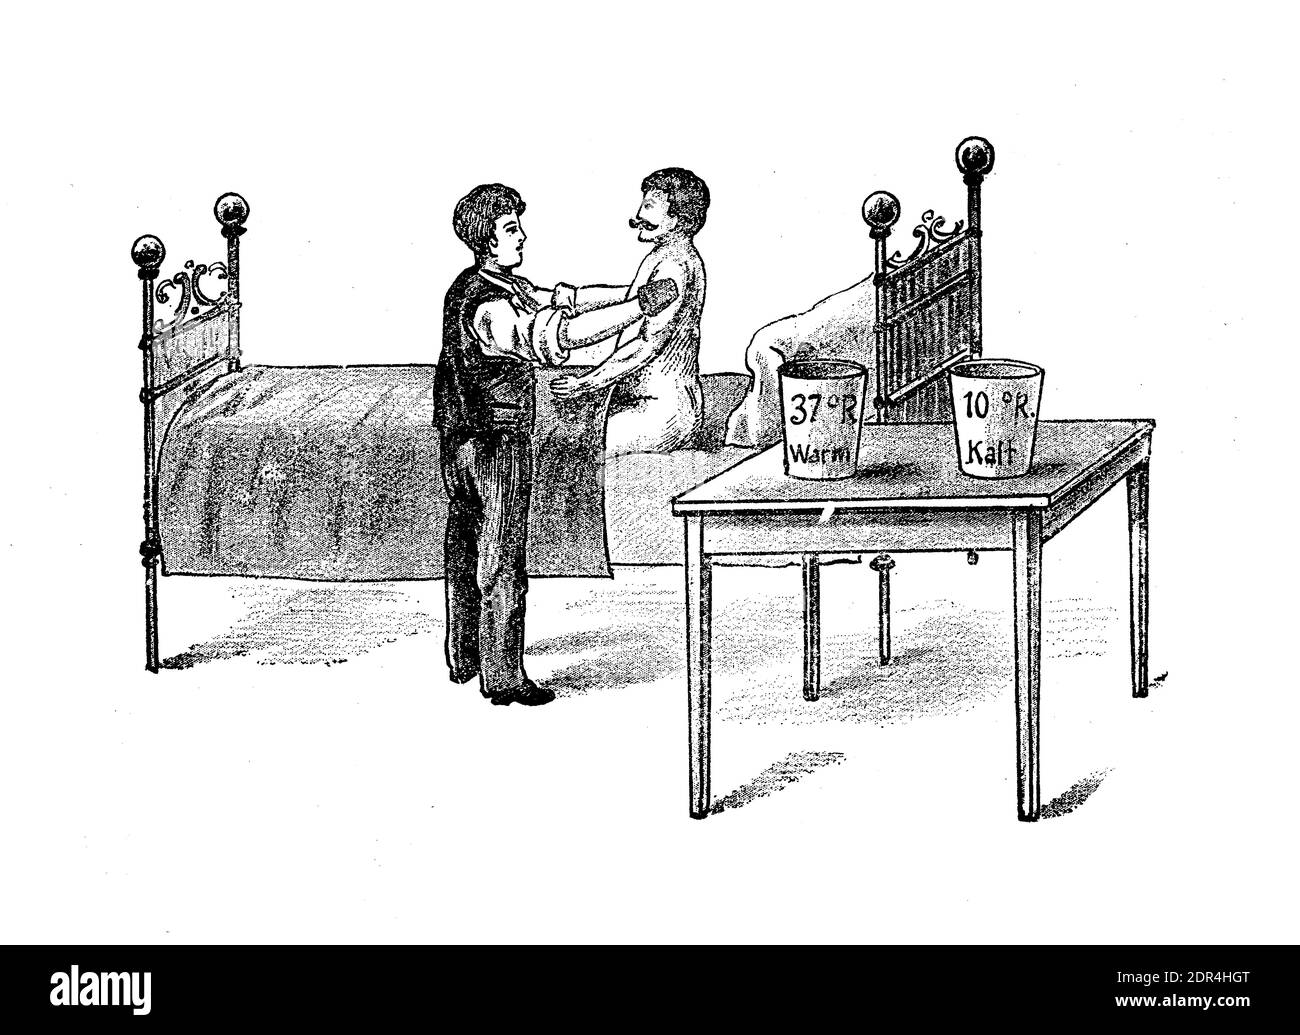 Thérapie de contraste: Homme prenant un traitement brumeux de frottement du corps alternant eau chaude et eau froide plusieurs fois, illustration du XIXe siècle Banque D'Images